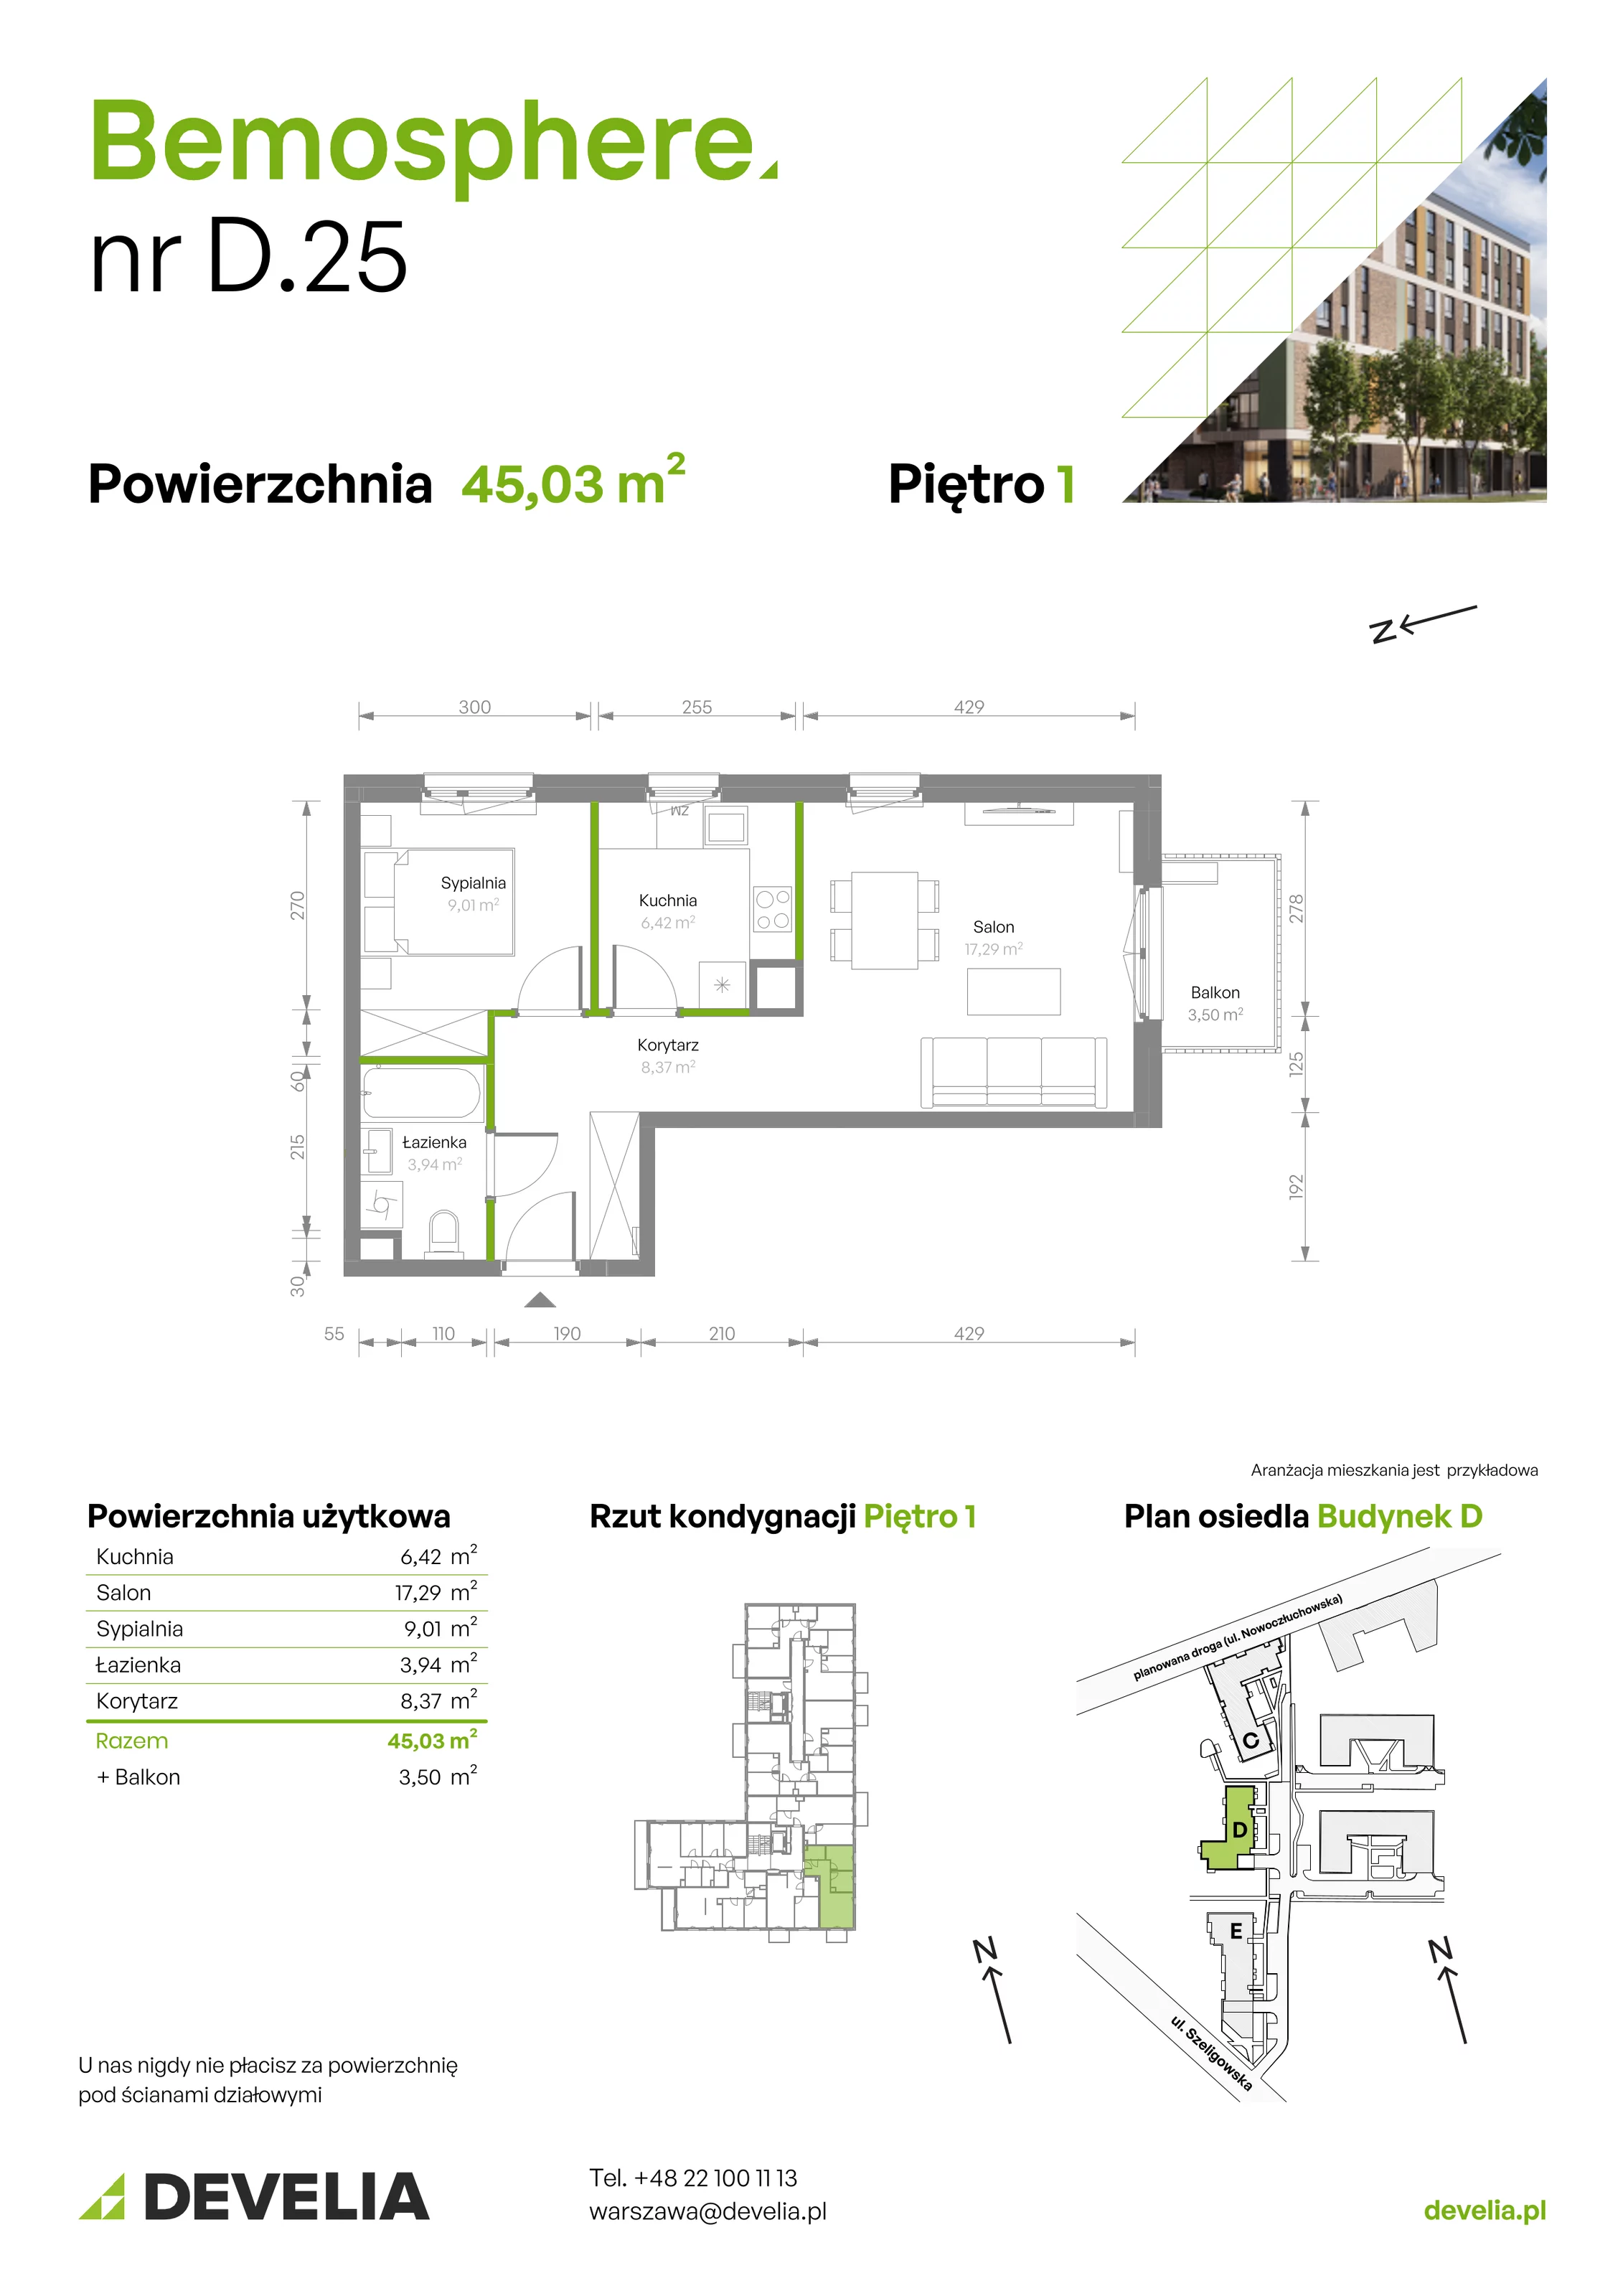 Mieszkanie 45,03 m², piętro 1, oferta nr D/025, Bemosphere, Warszawa, Bemowo, Chrzanów, ul. Szeligowska 24